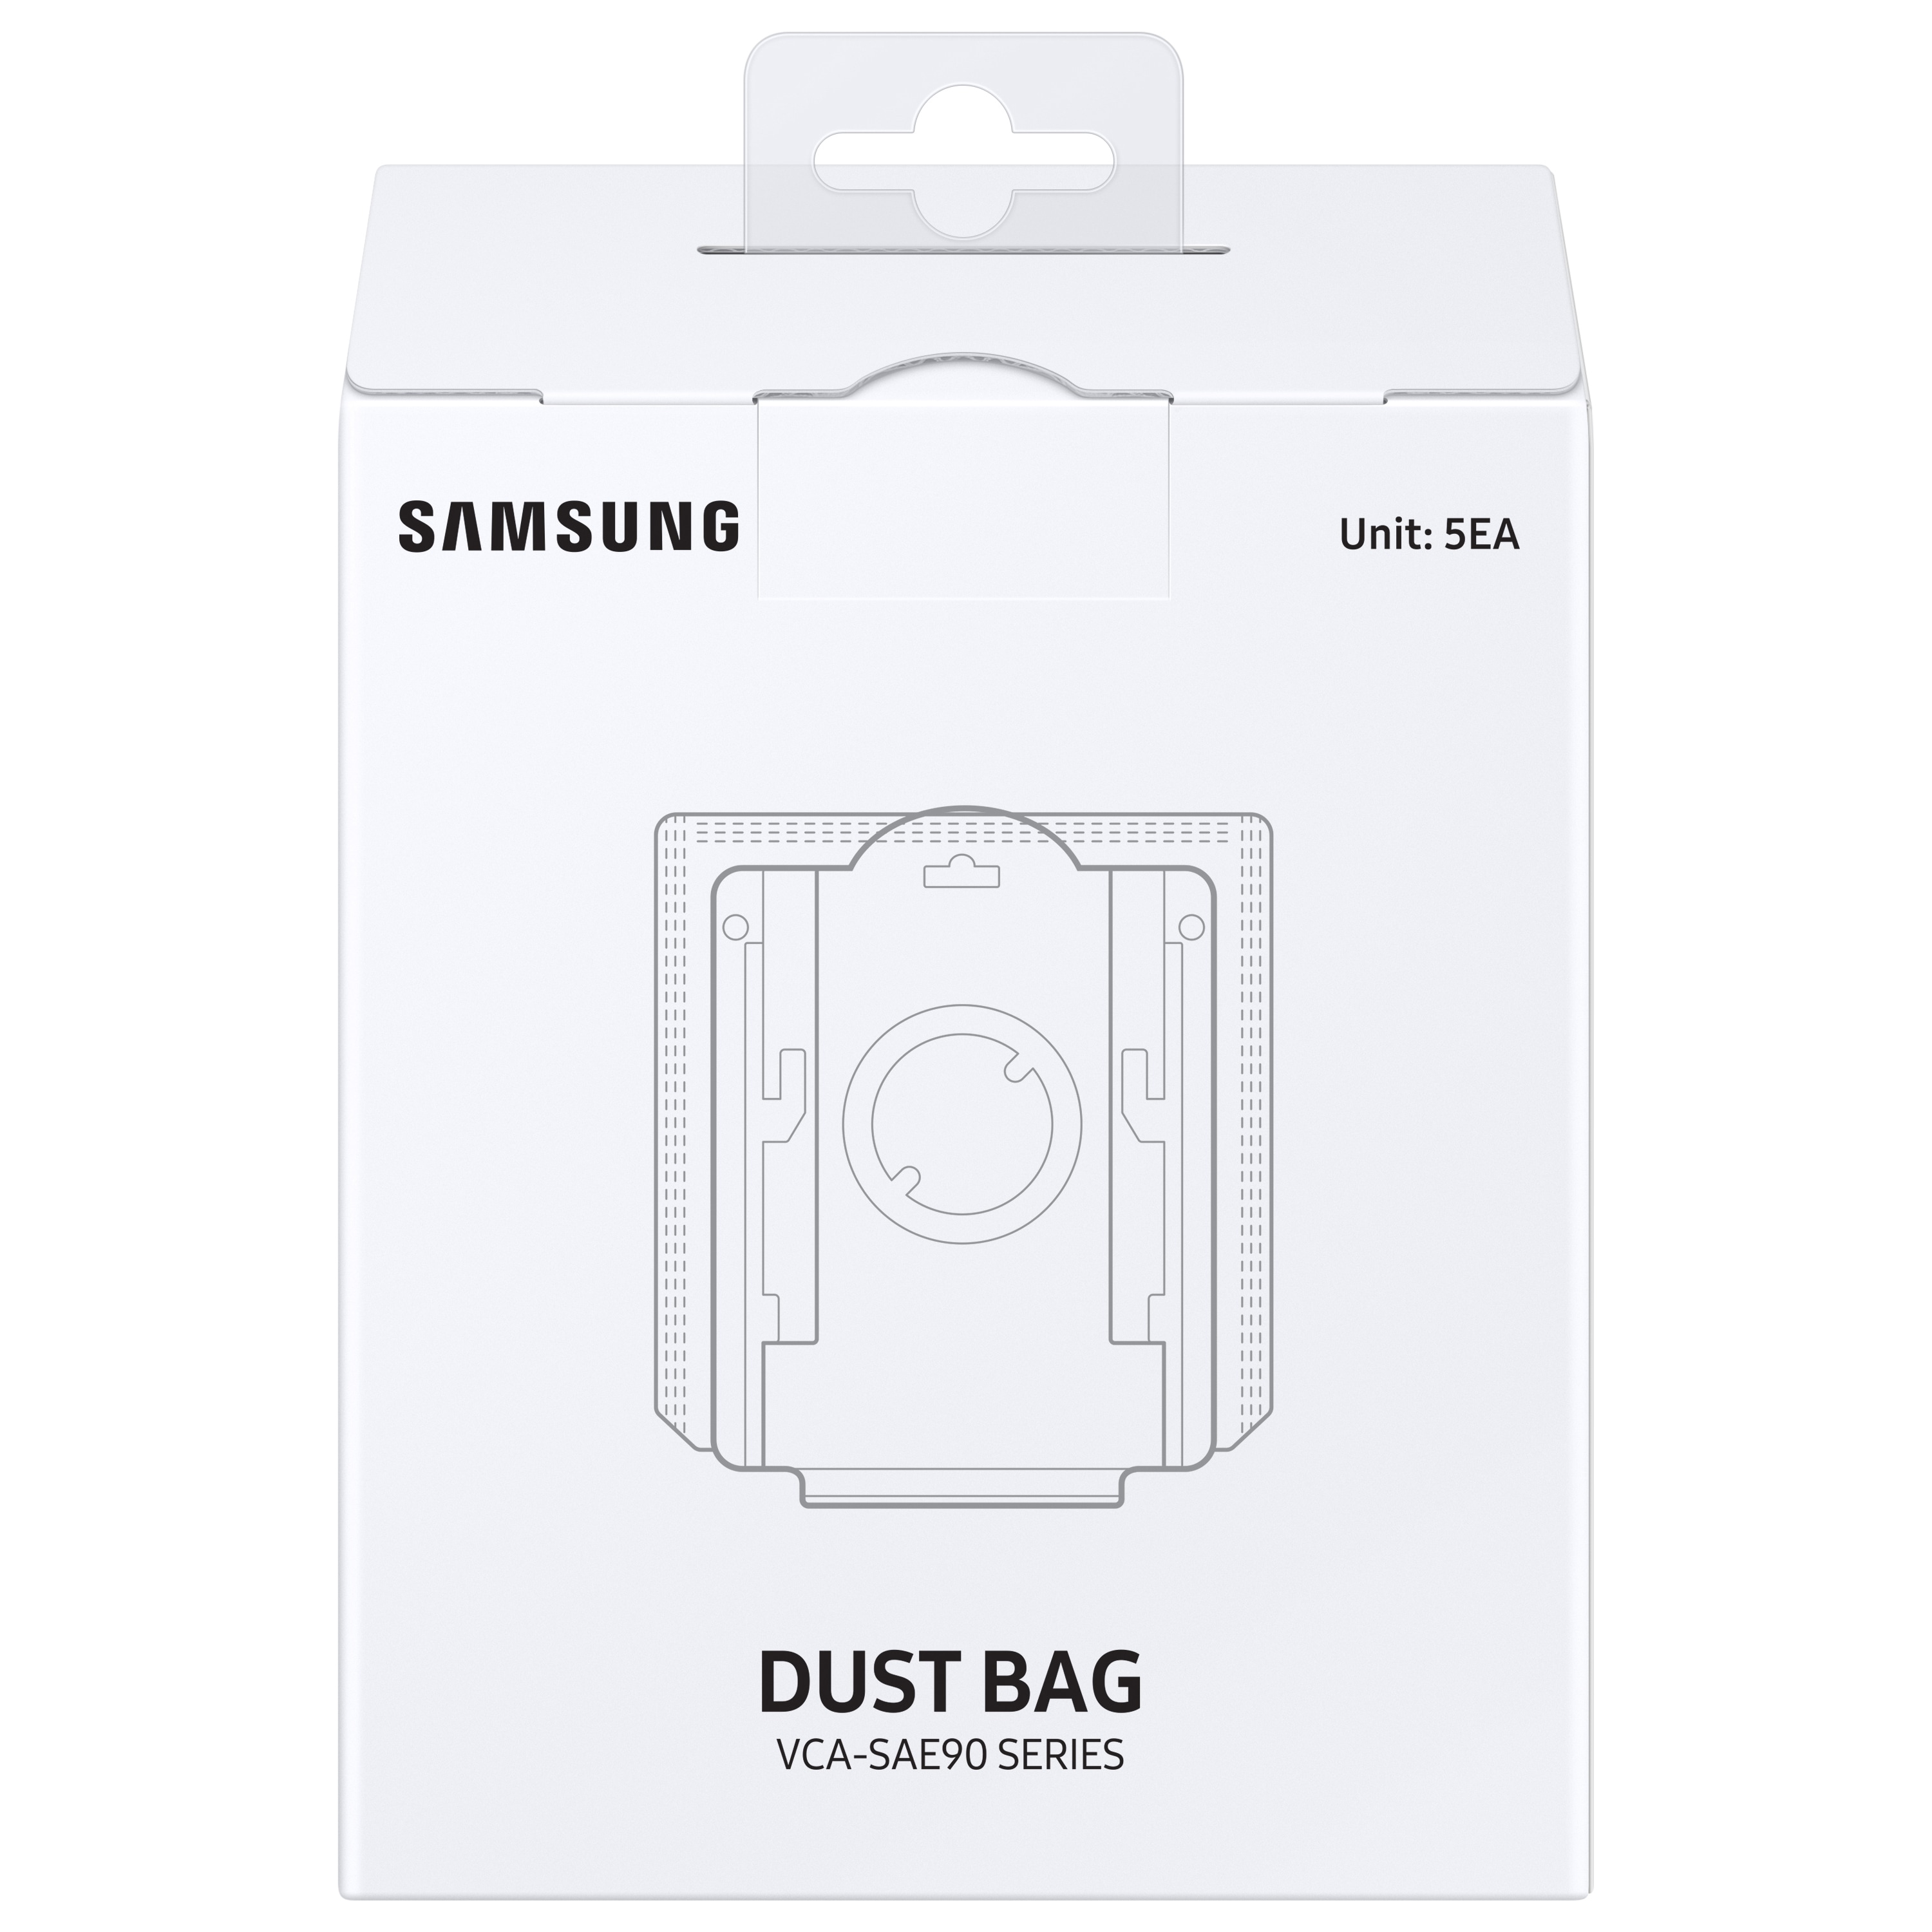 Samsung Vacuum Bags – Vacuum Direct